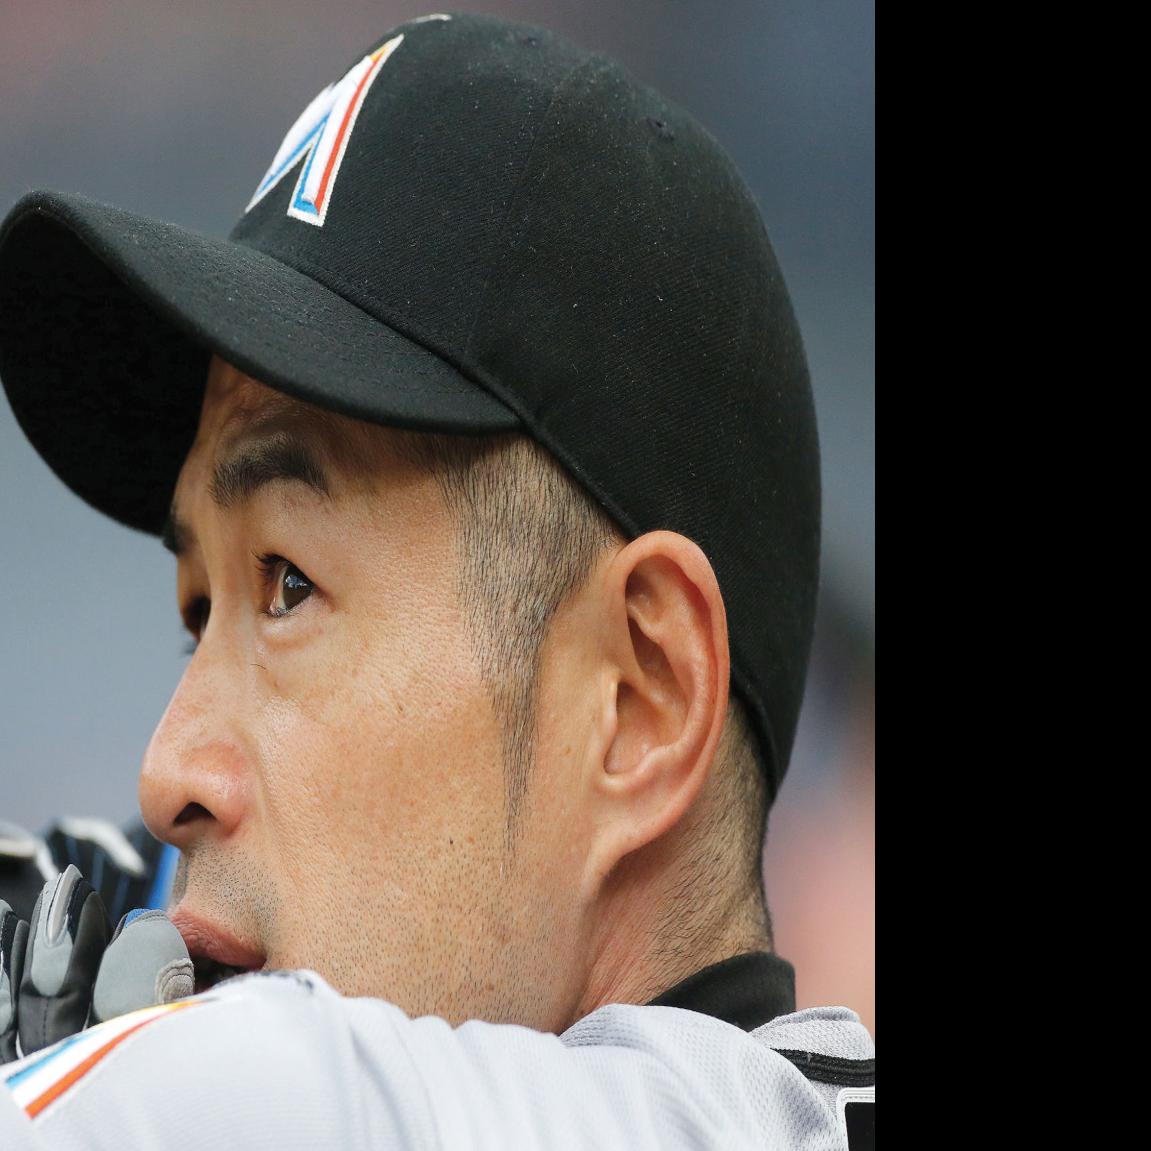 Yankees respond to Ichiro deal, 07/23/2012